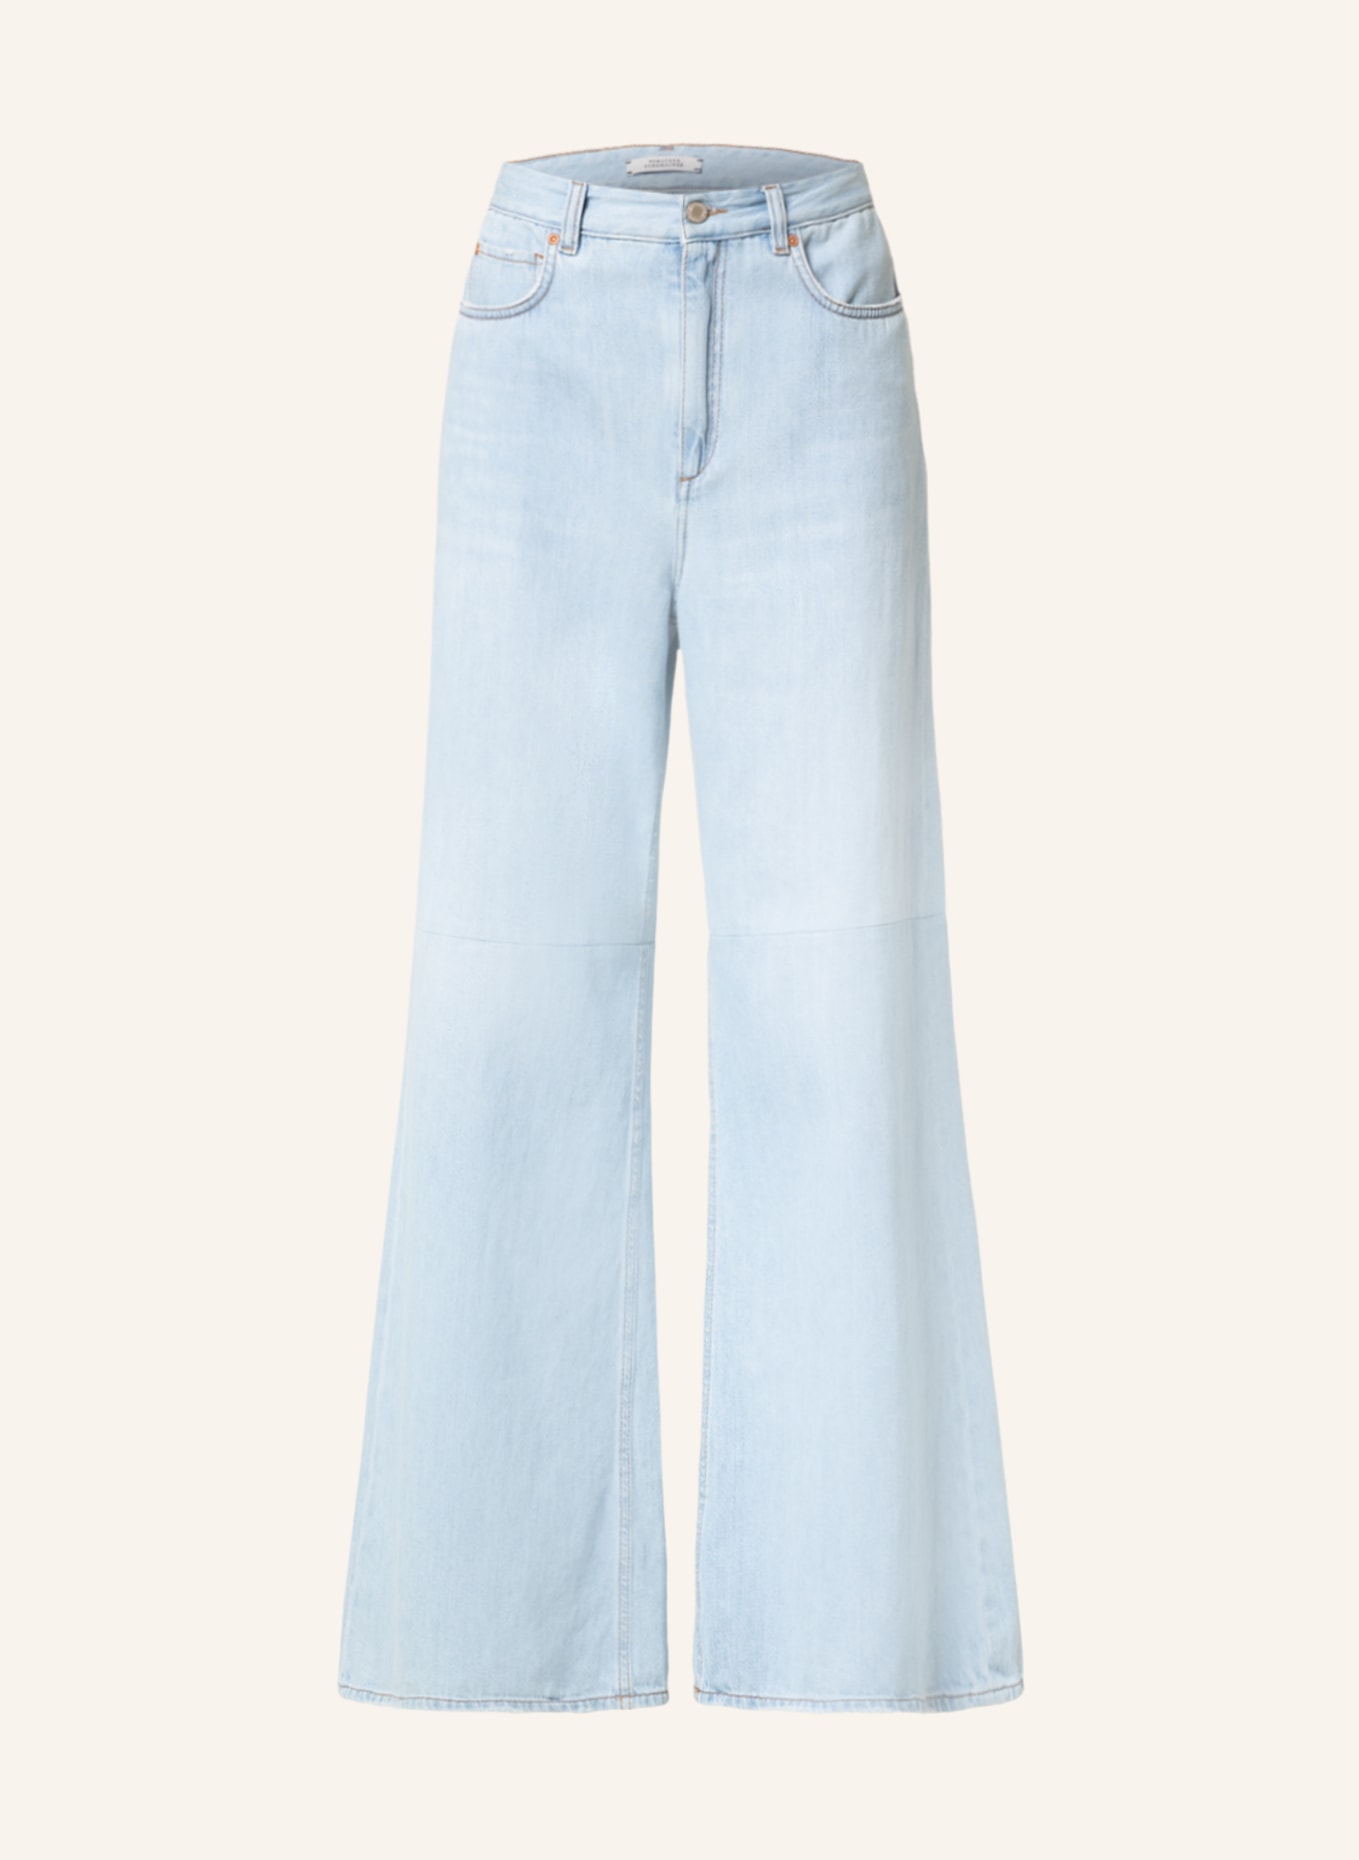 DOROTHEE SCHUMACHER Straight Jeans, Farbe: 811 denim (Bild 1)